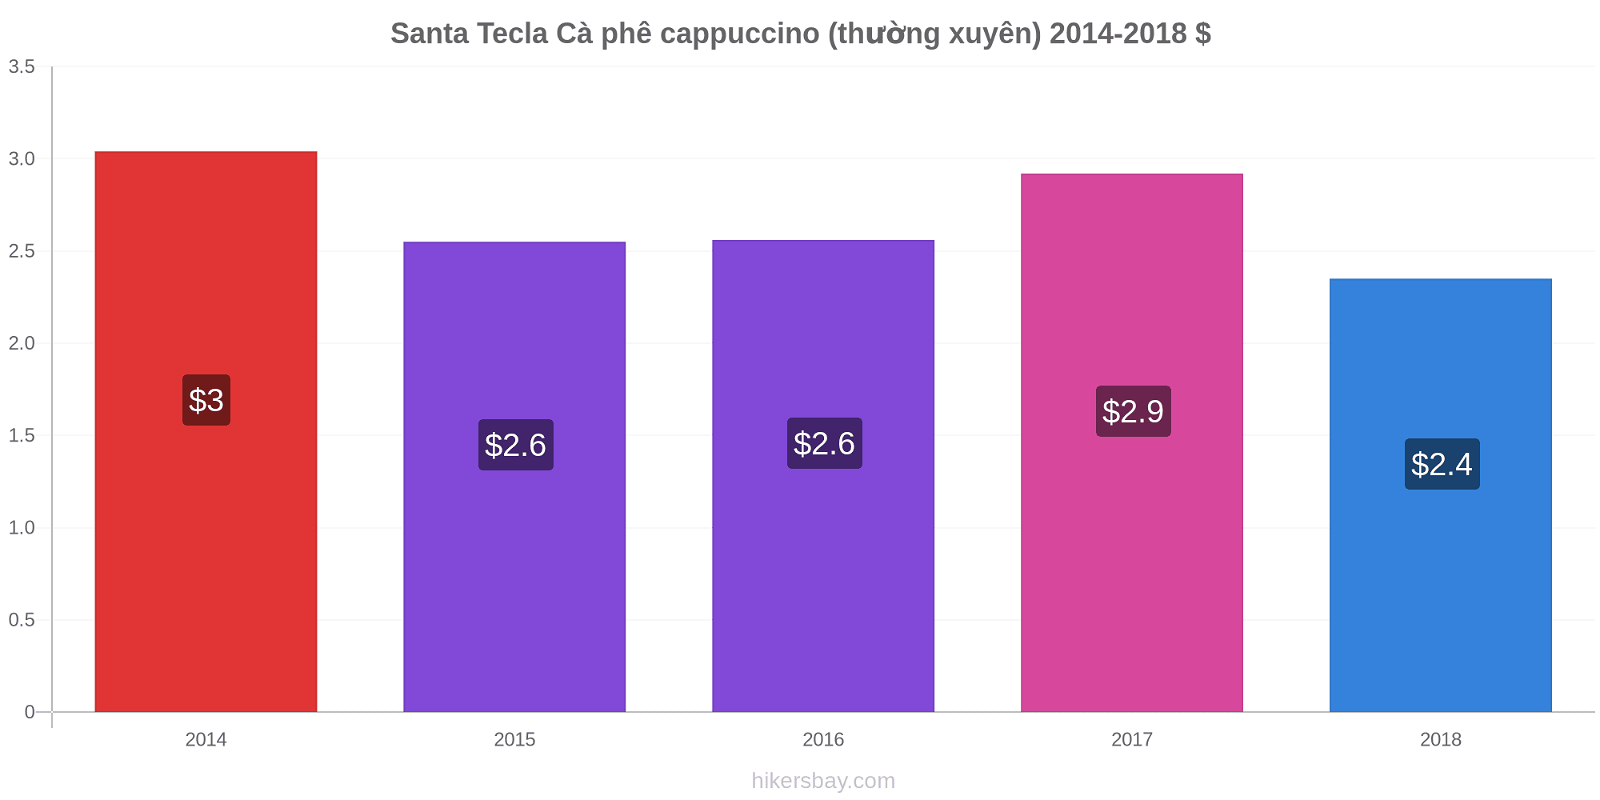 Santa Tecla thay đổi giá Cà phê cappuccino (thường xuyên) hikersbay.com